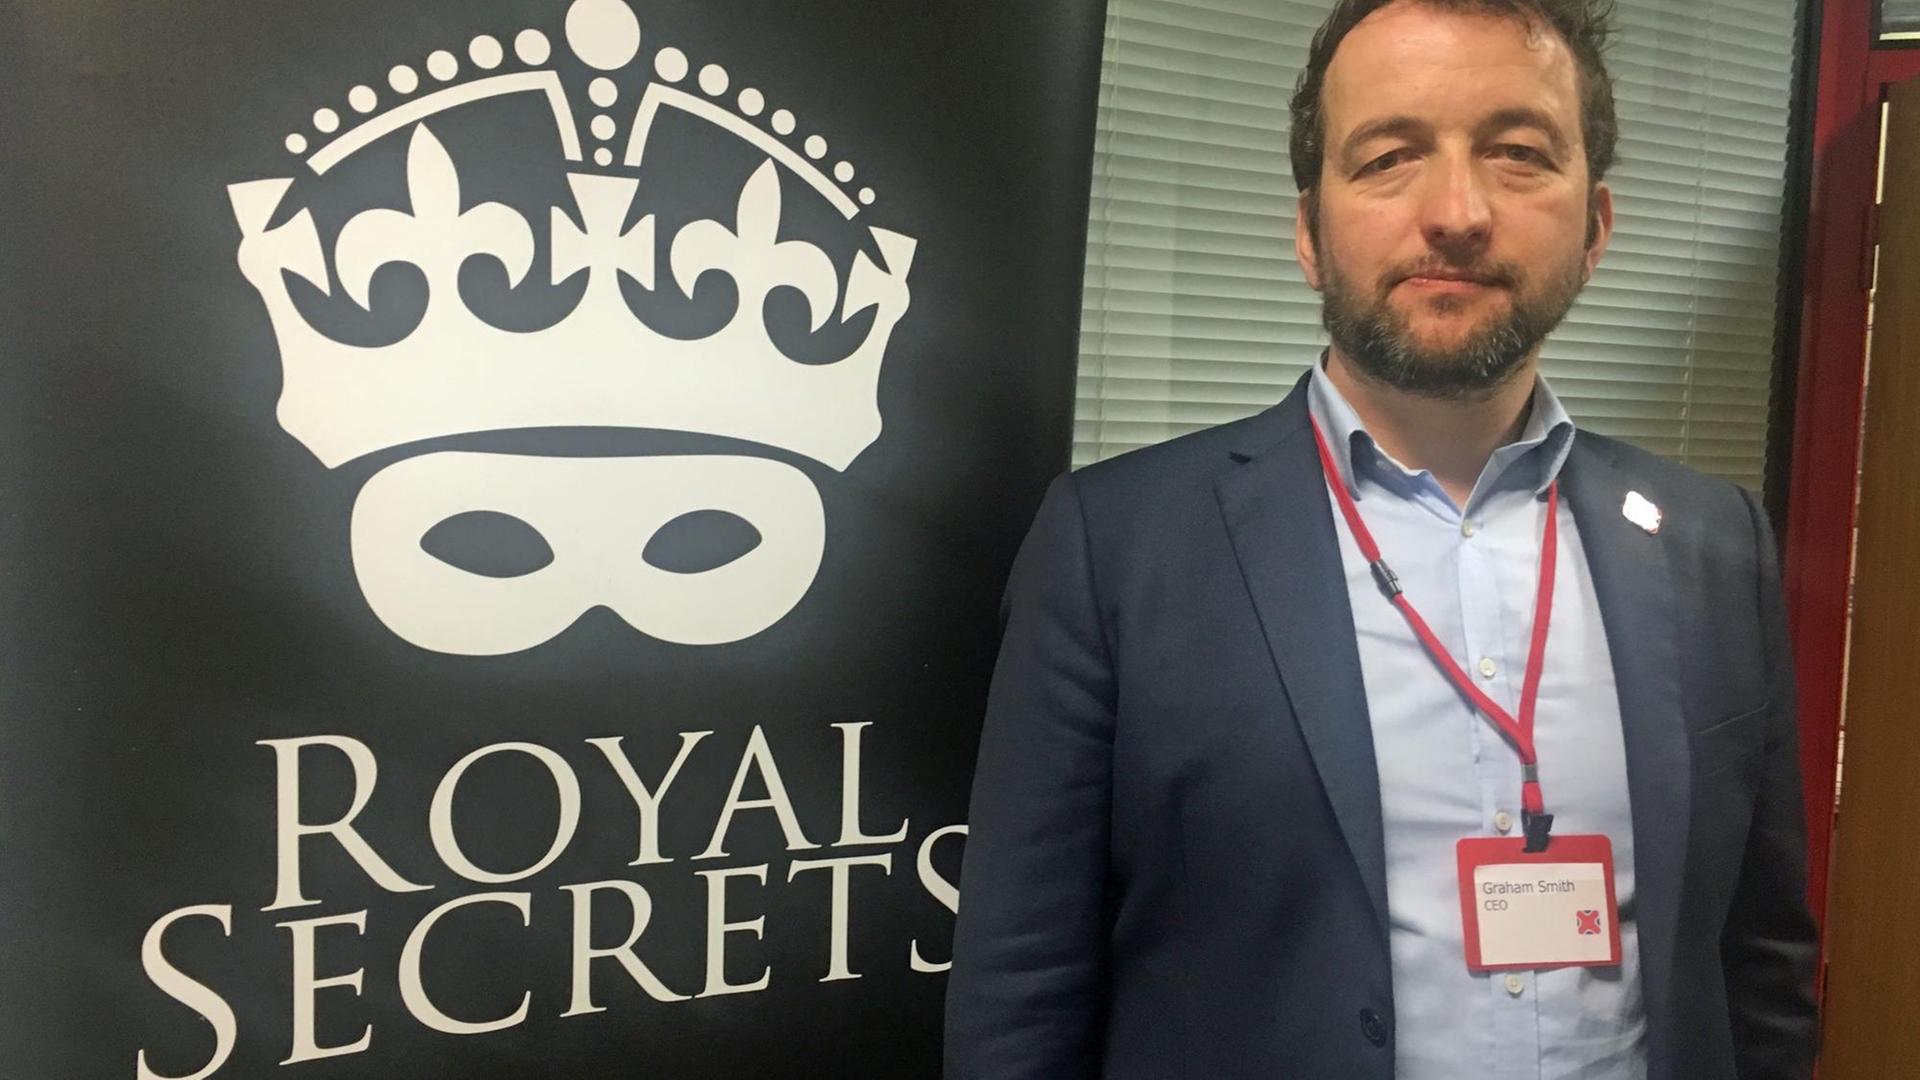 Graham Smith, Leiter der Organisation "Republic", vor einem Werbeplakat für ein Buch mit der Aufschrift "Royal Secrets" - "Königliche Geheimnisse"